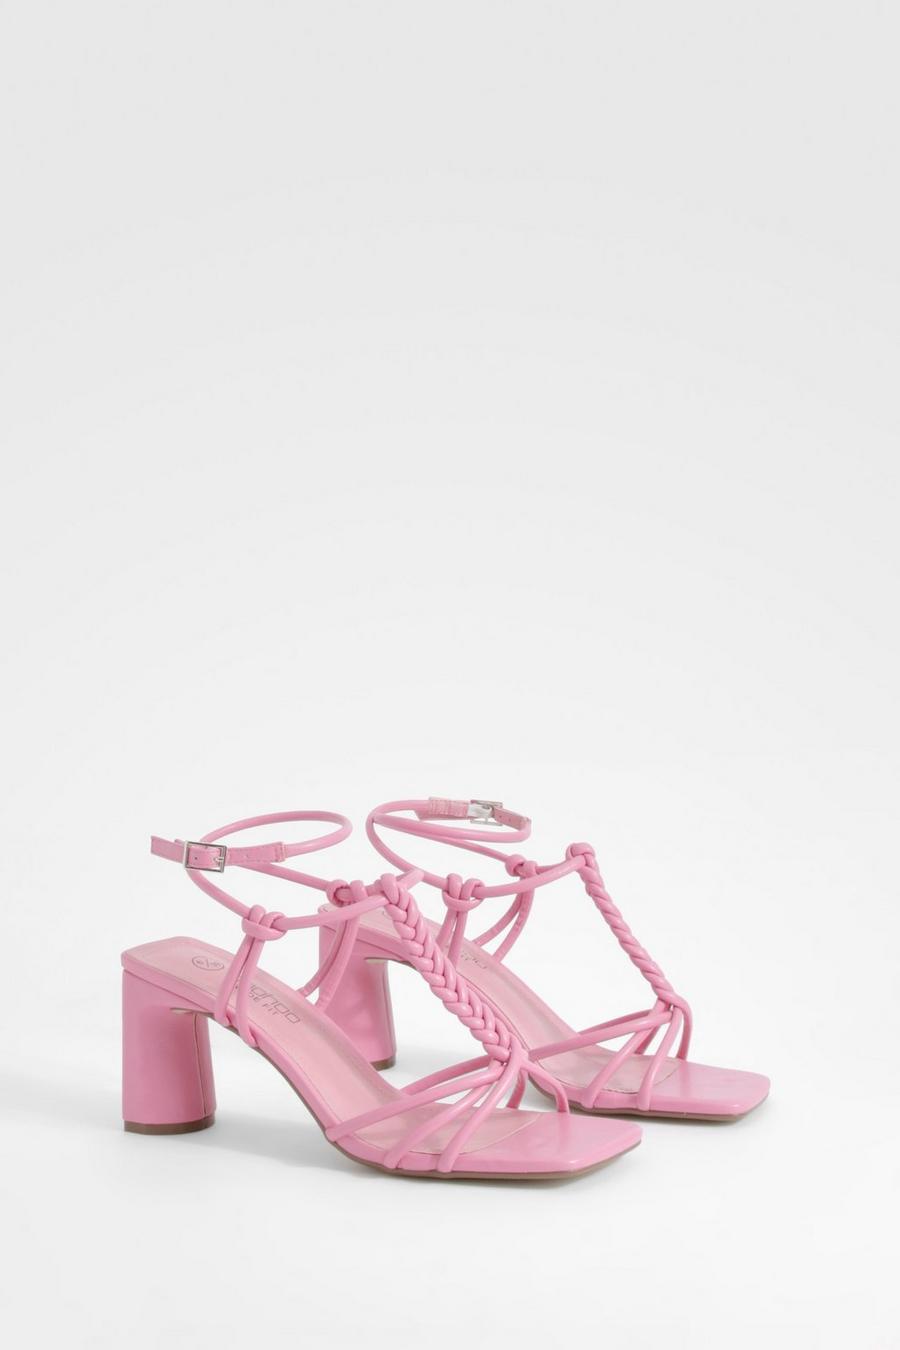 Scarpe a calzata ampia con tacco basso piatto e annodato, Pink